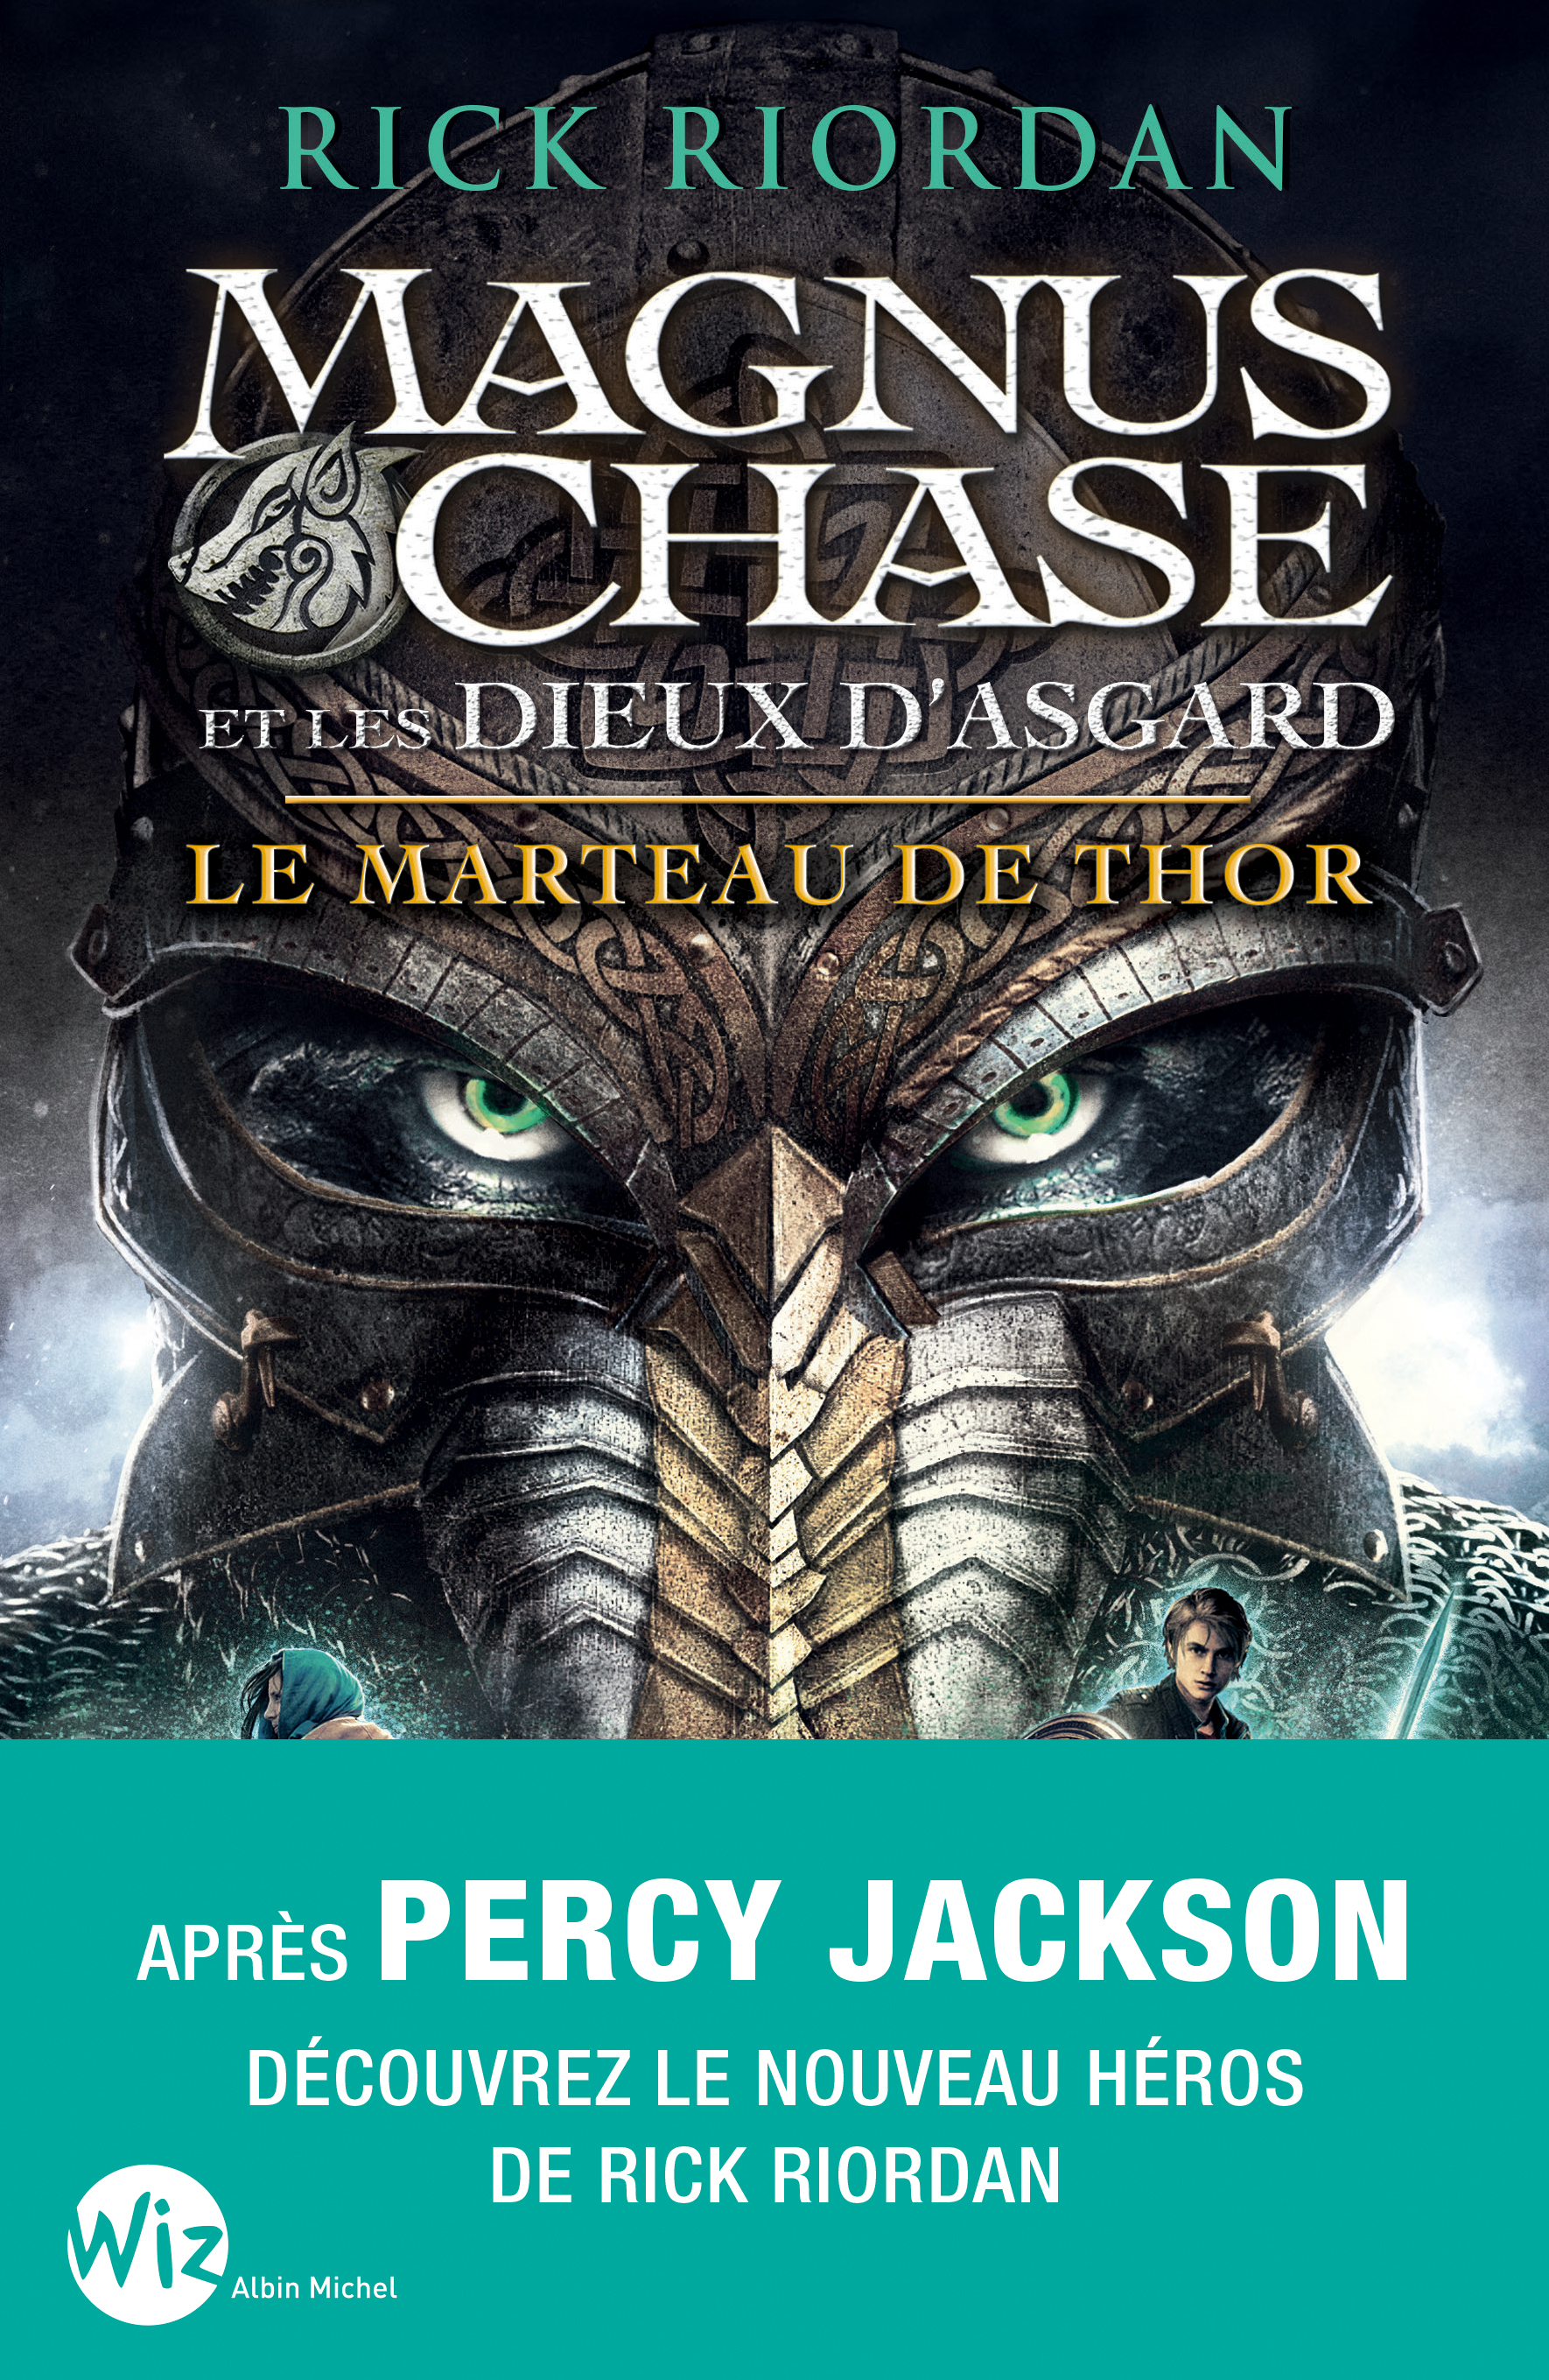 Couverture du livre Magnus Chase et les dieux d'Asgard - tome 2